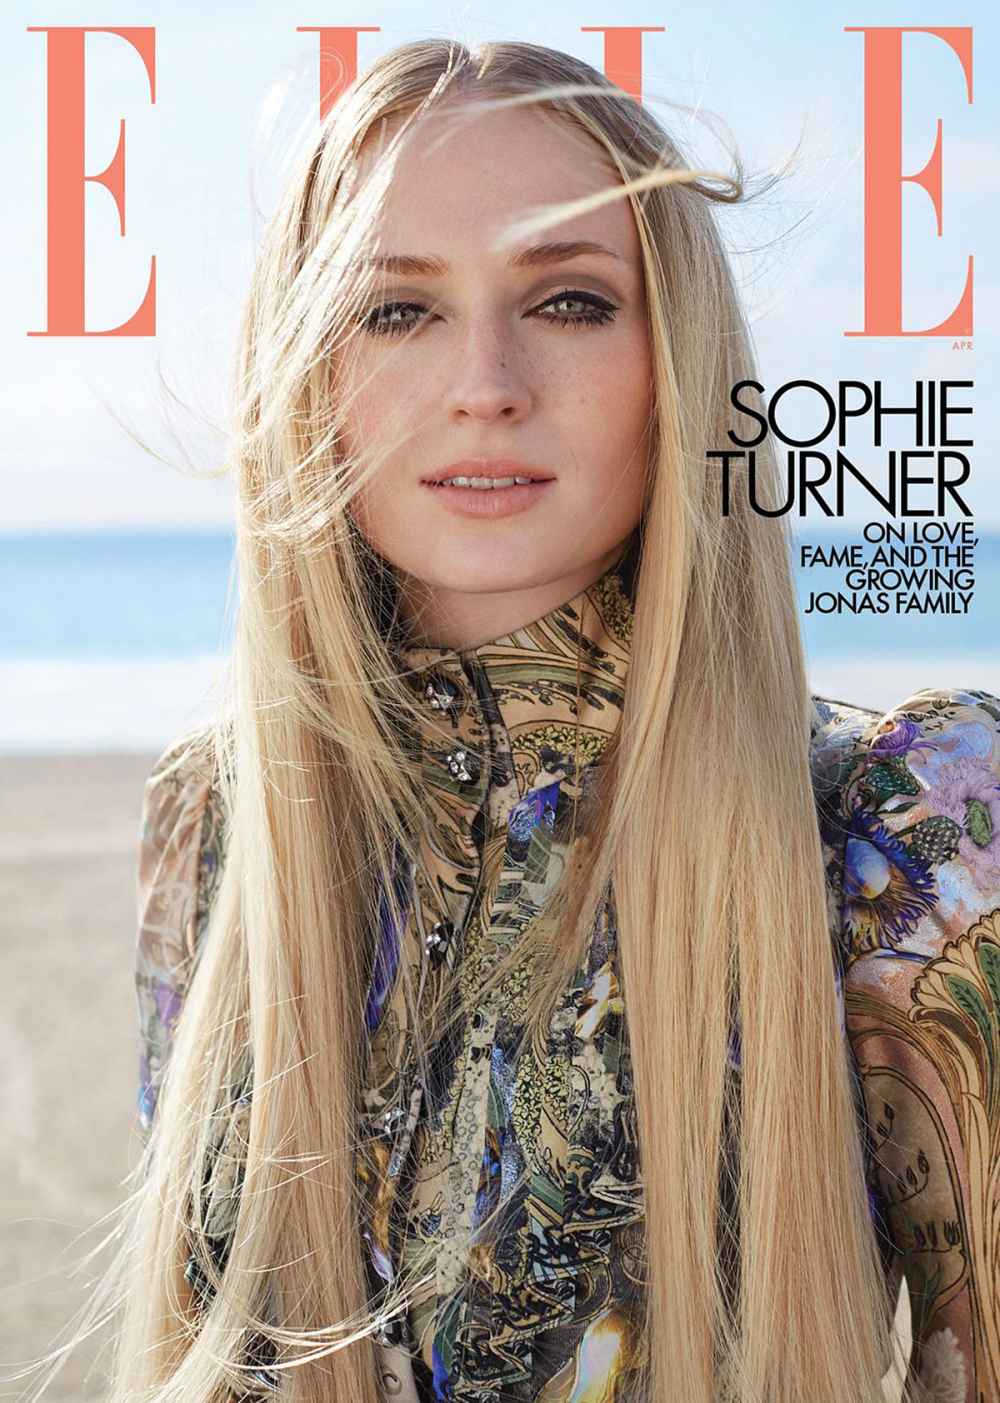 Sophie Turner Elle April 2020 Cover